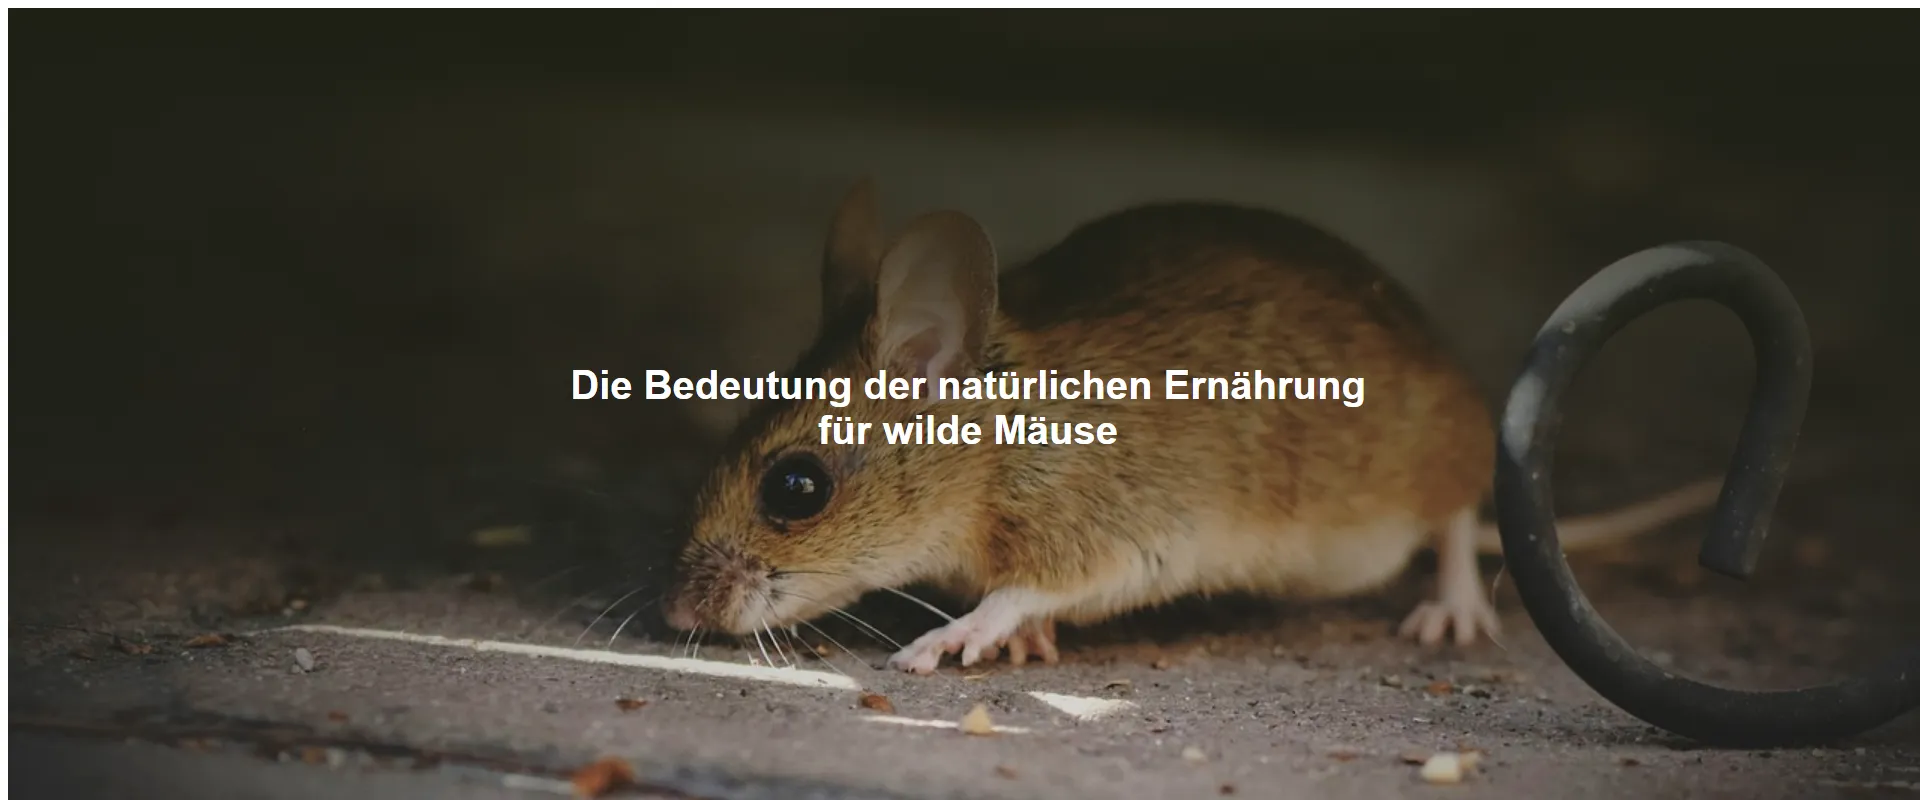 Die Bedeutung der natürlichen Ernährung für wilde Mäuse